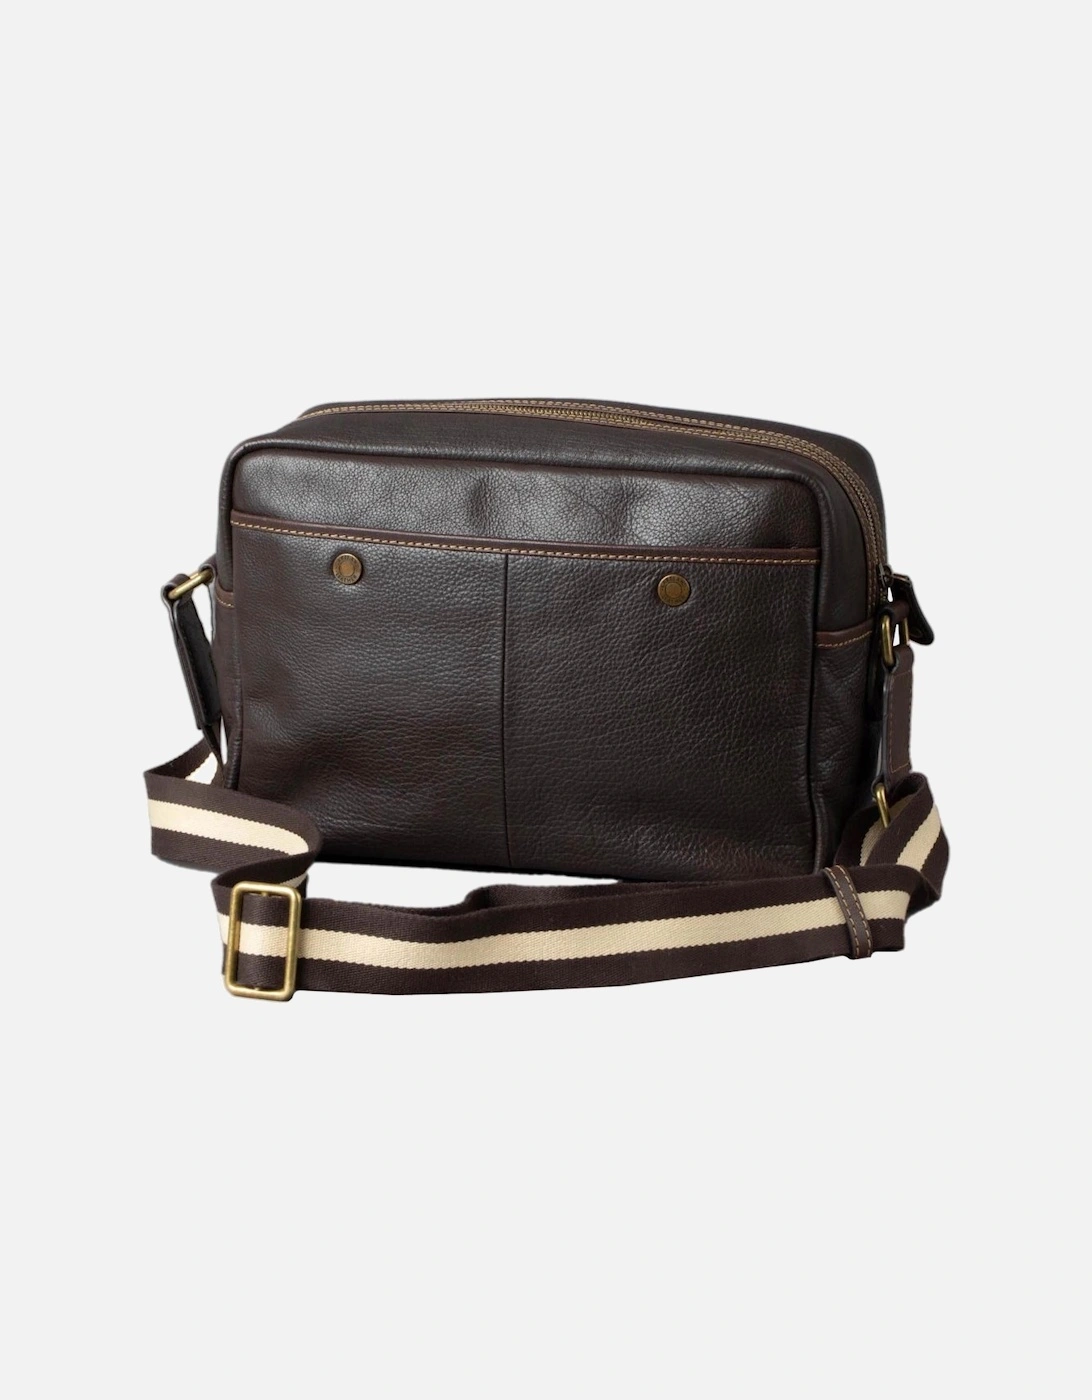 Kelsick Leather Messenger Bag